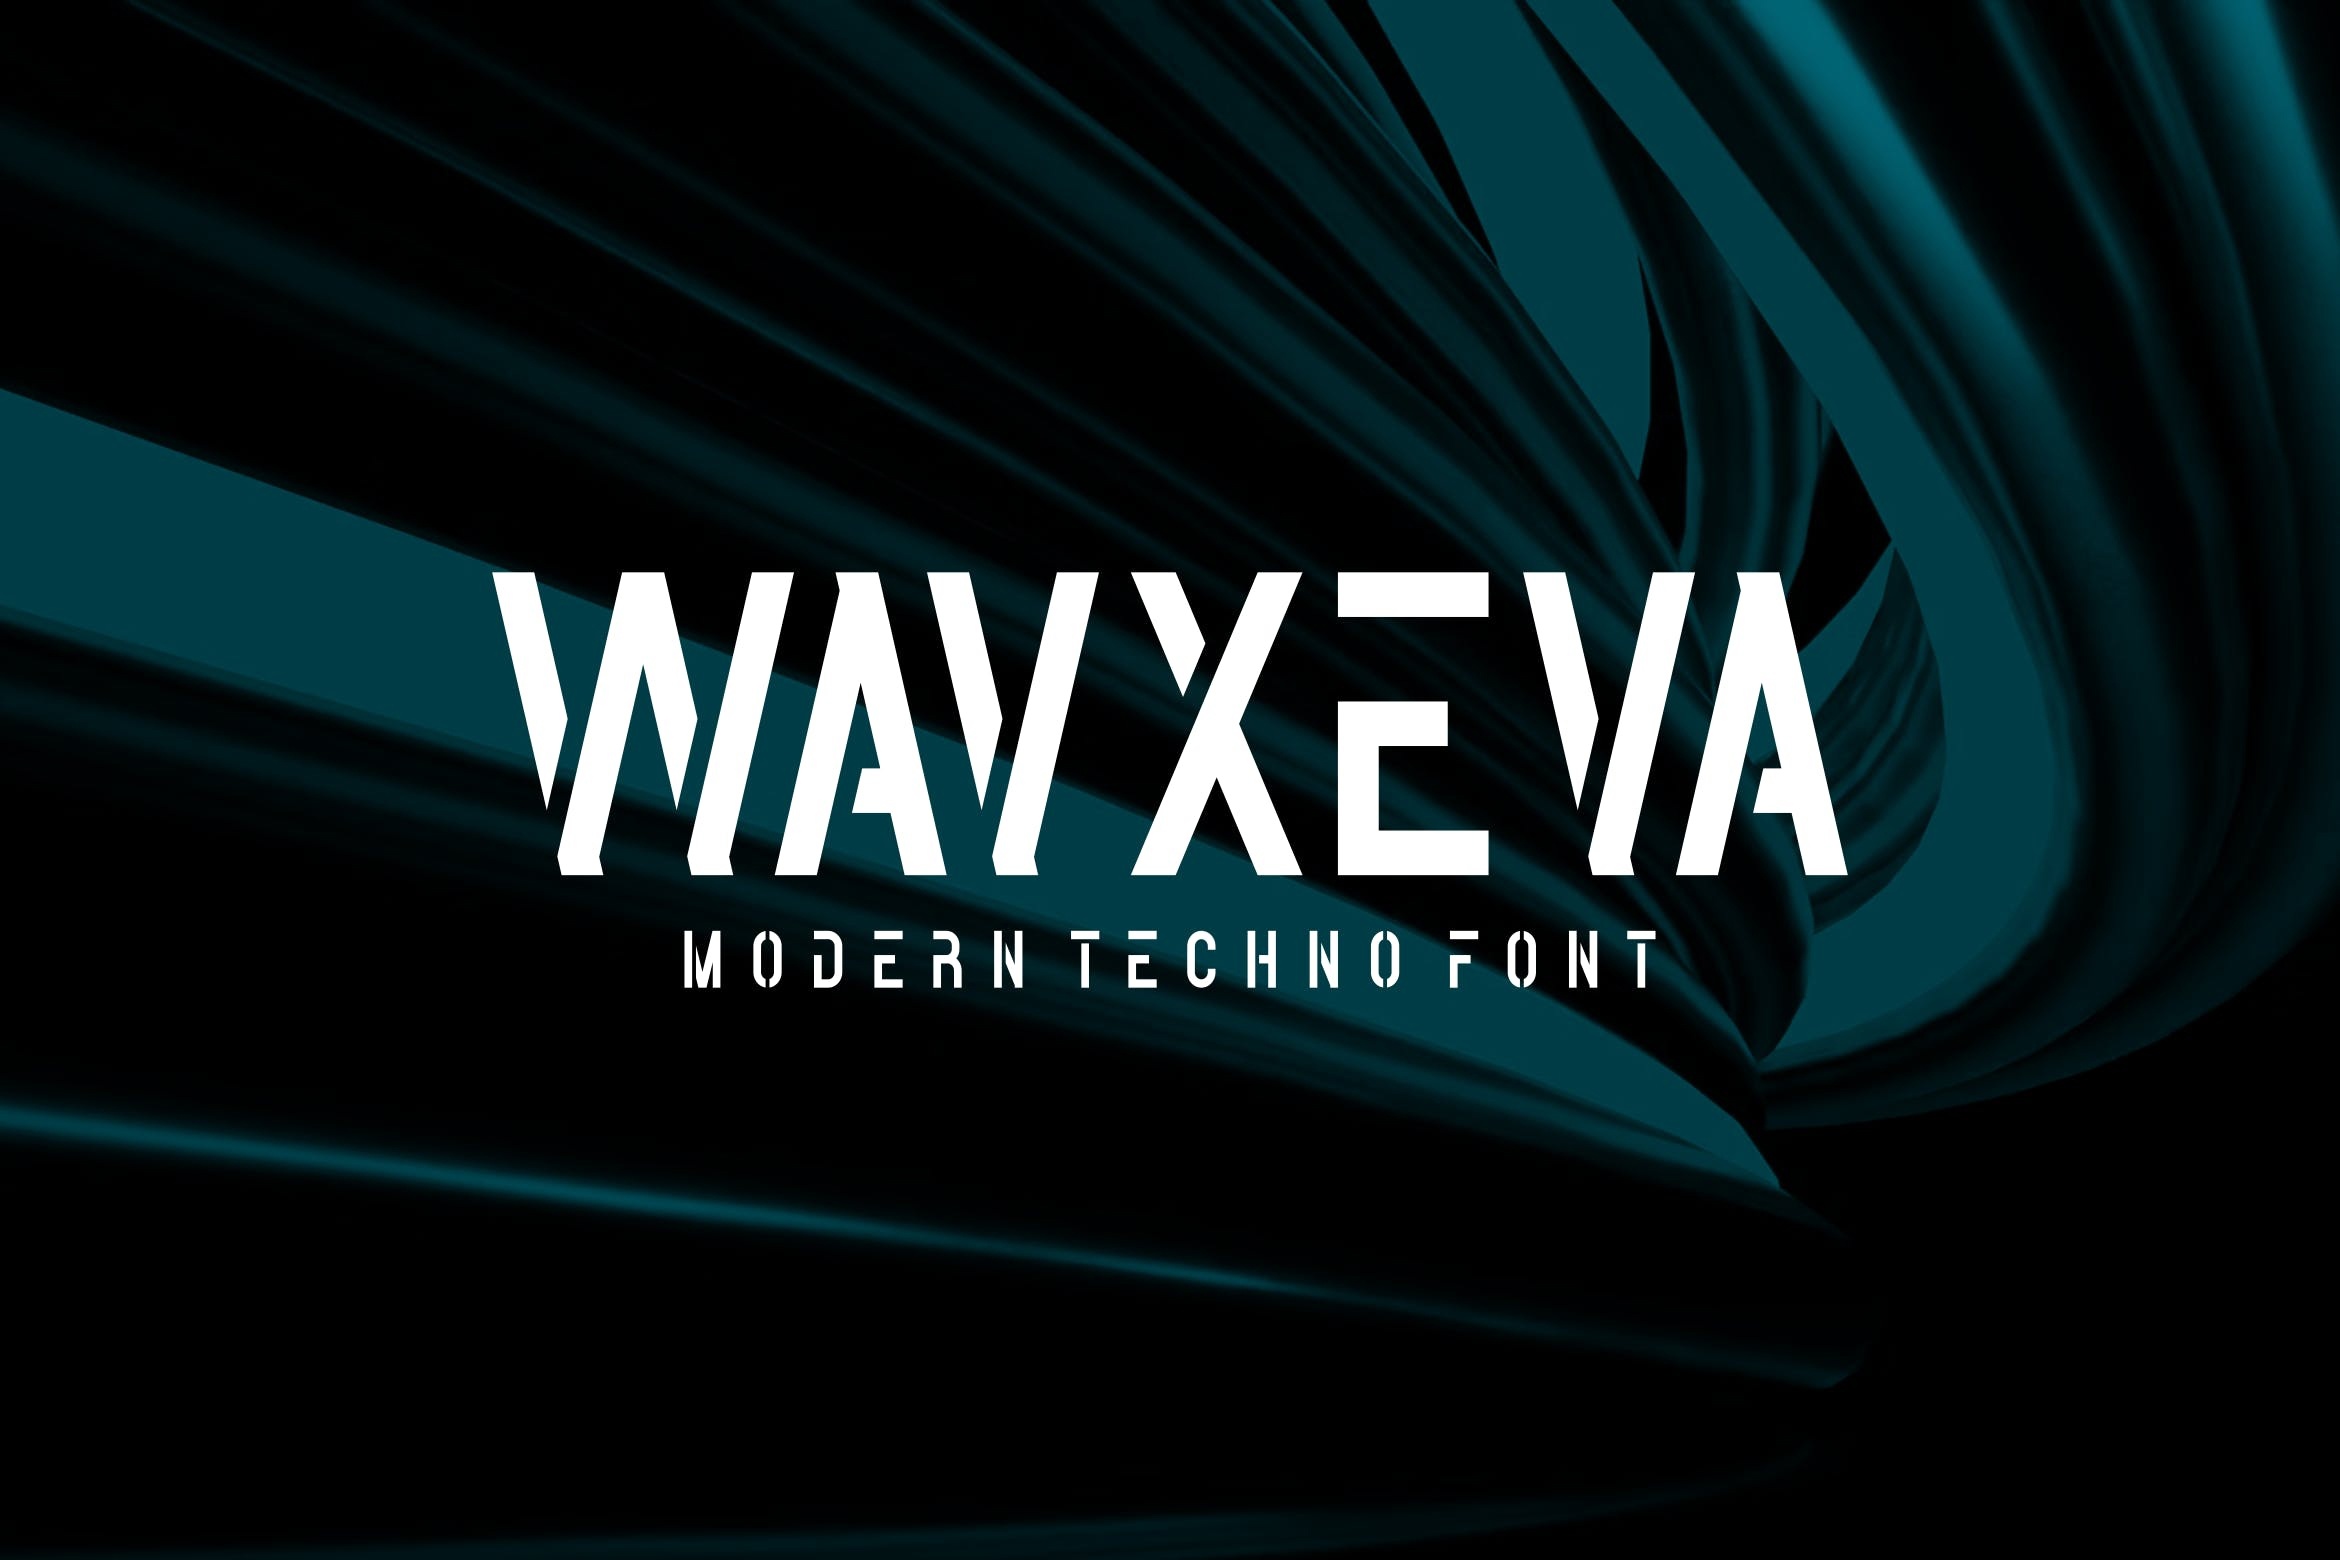 Пример шрифта Wavxeva